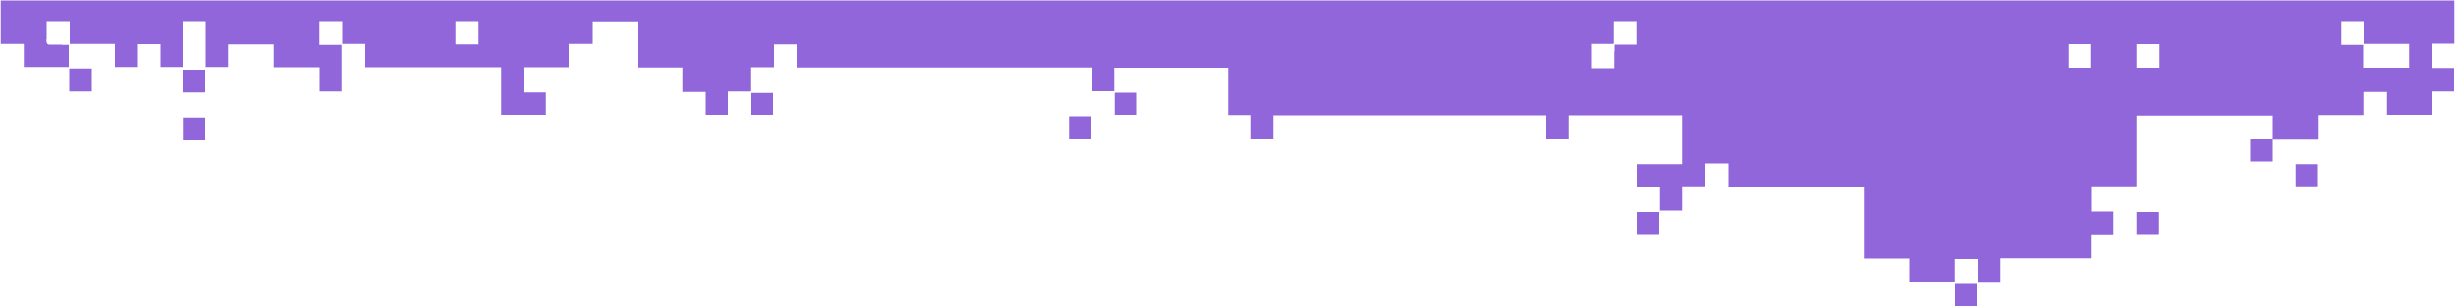 Pixel breakdown purple-thin